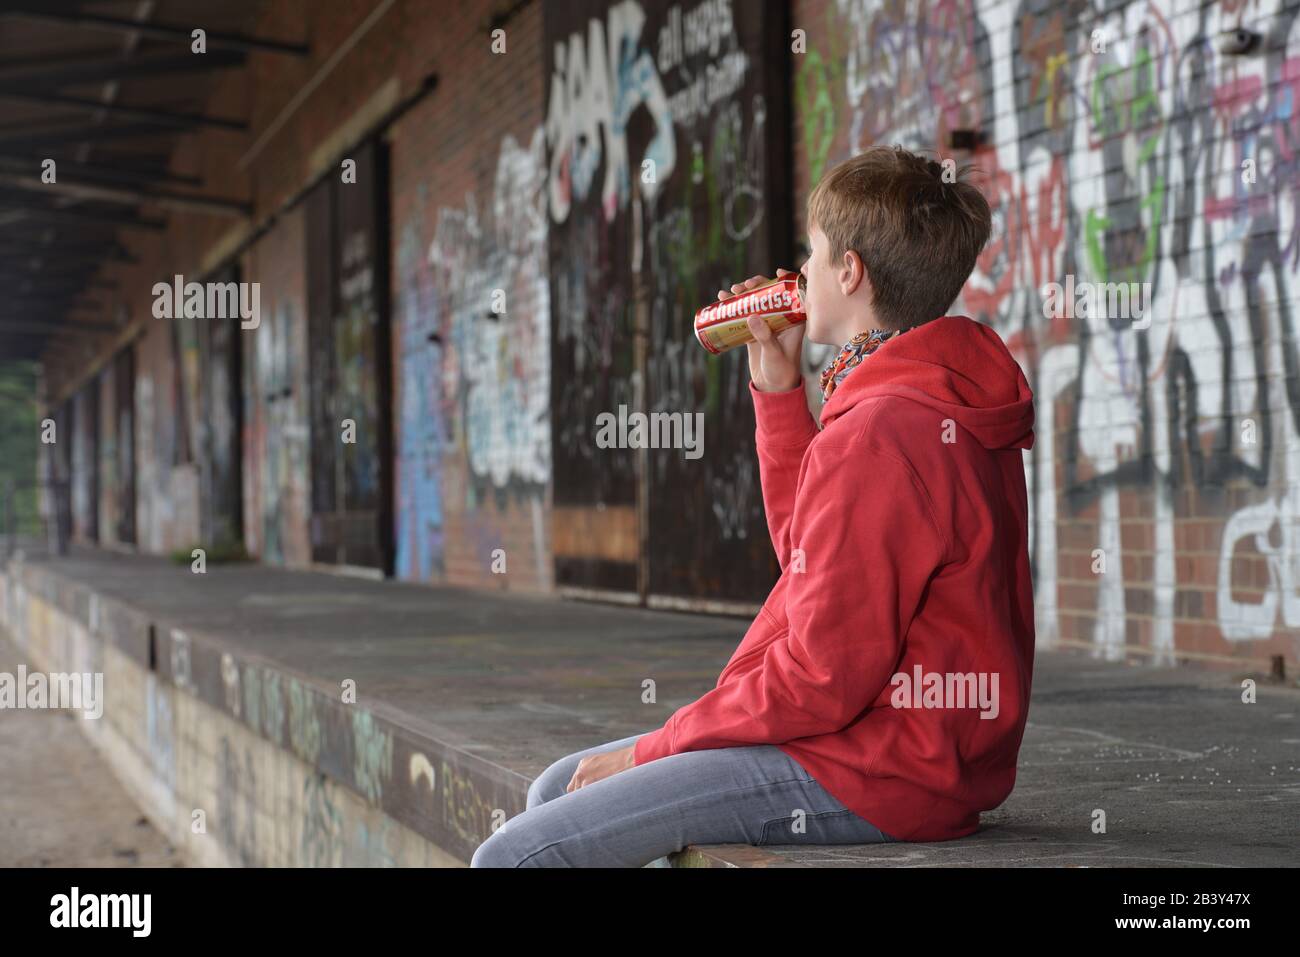 Jugendlicher, Bier, Trinken Stock Photo